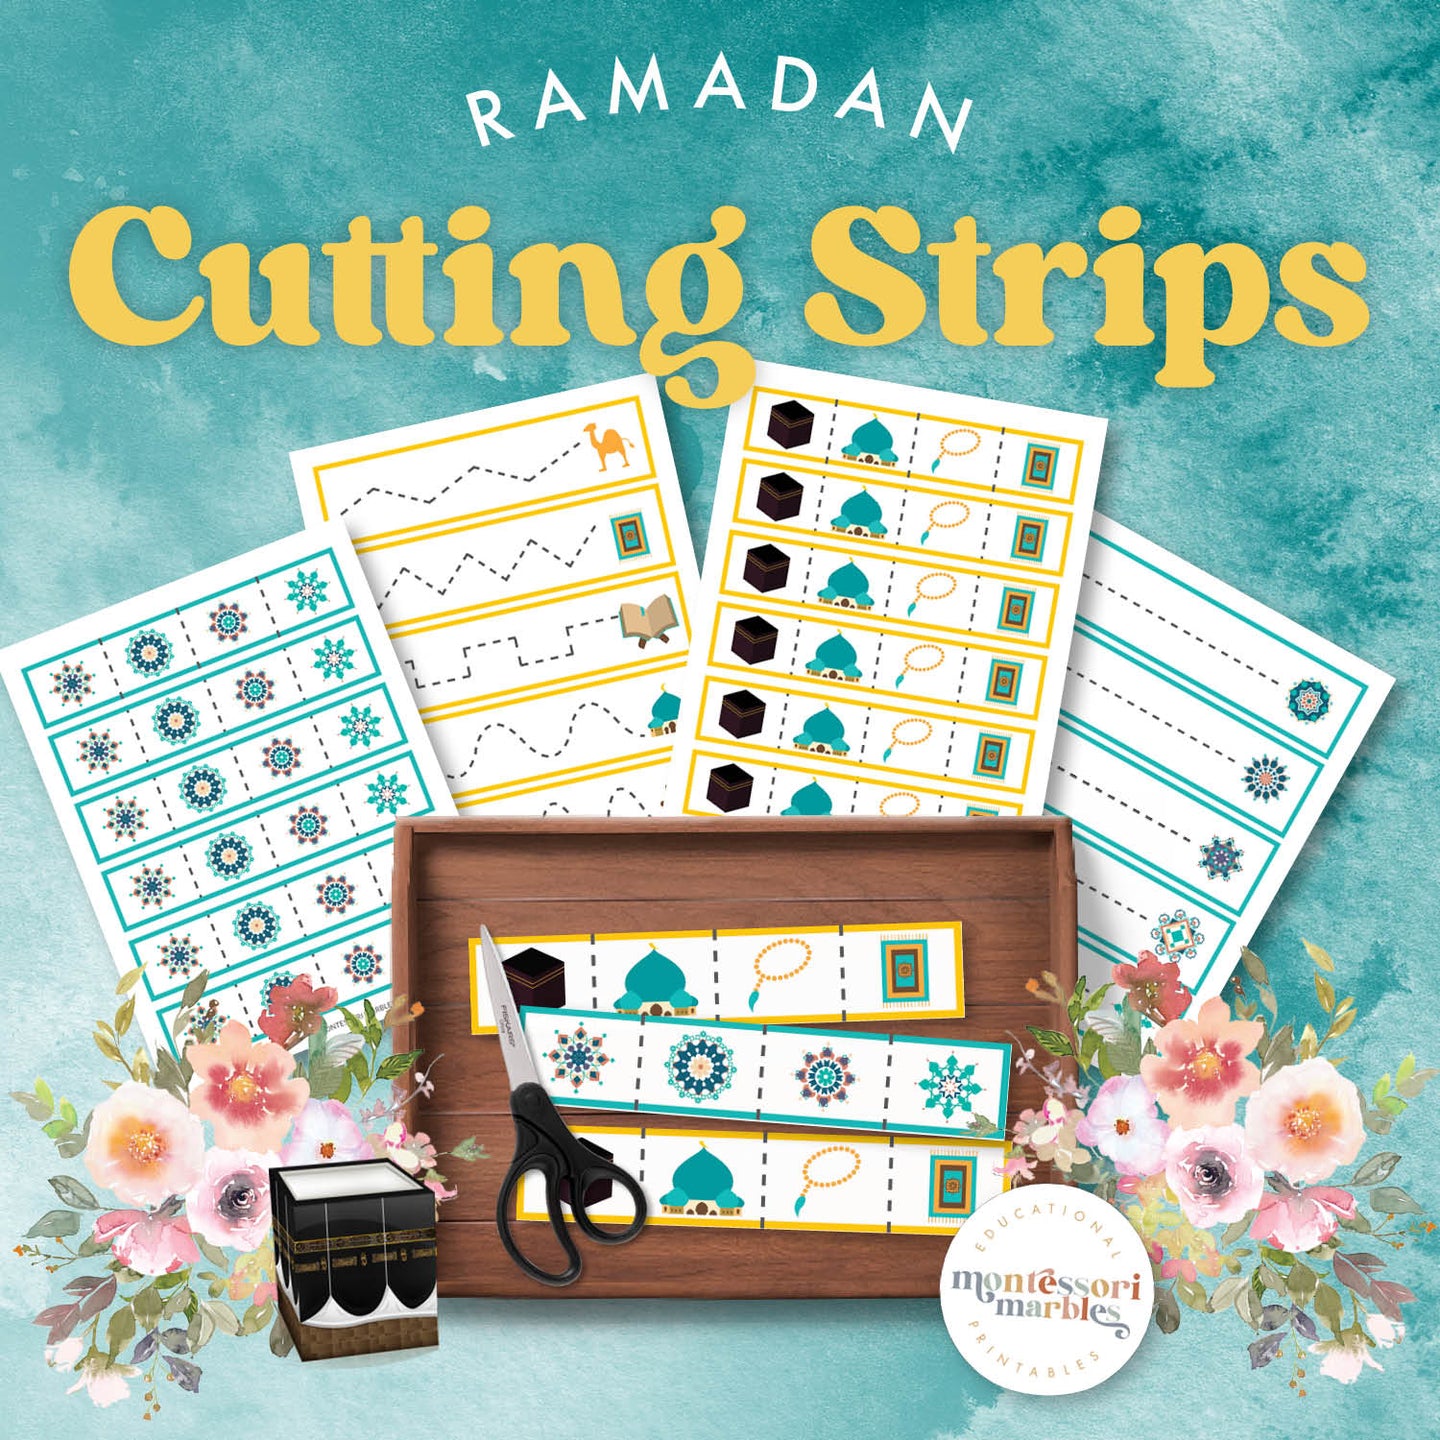 Ramadan Cutting Strips